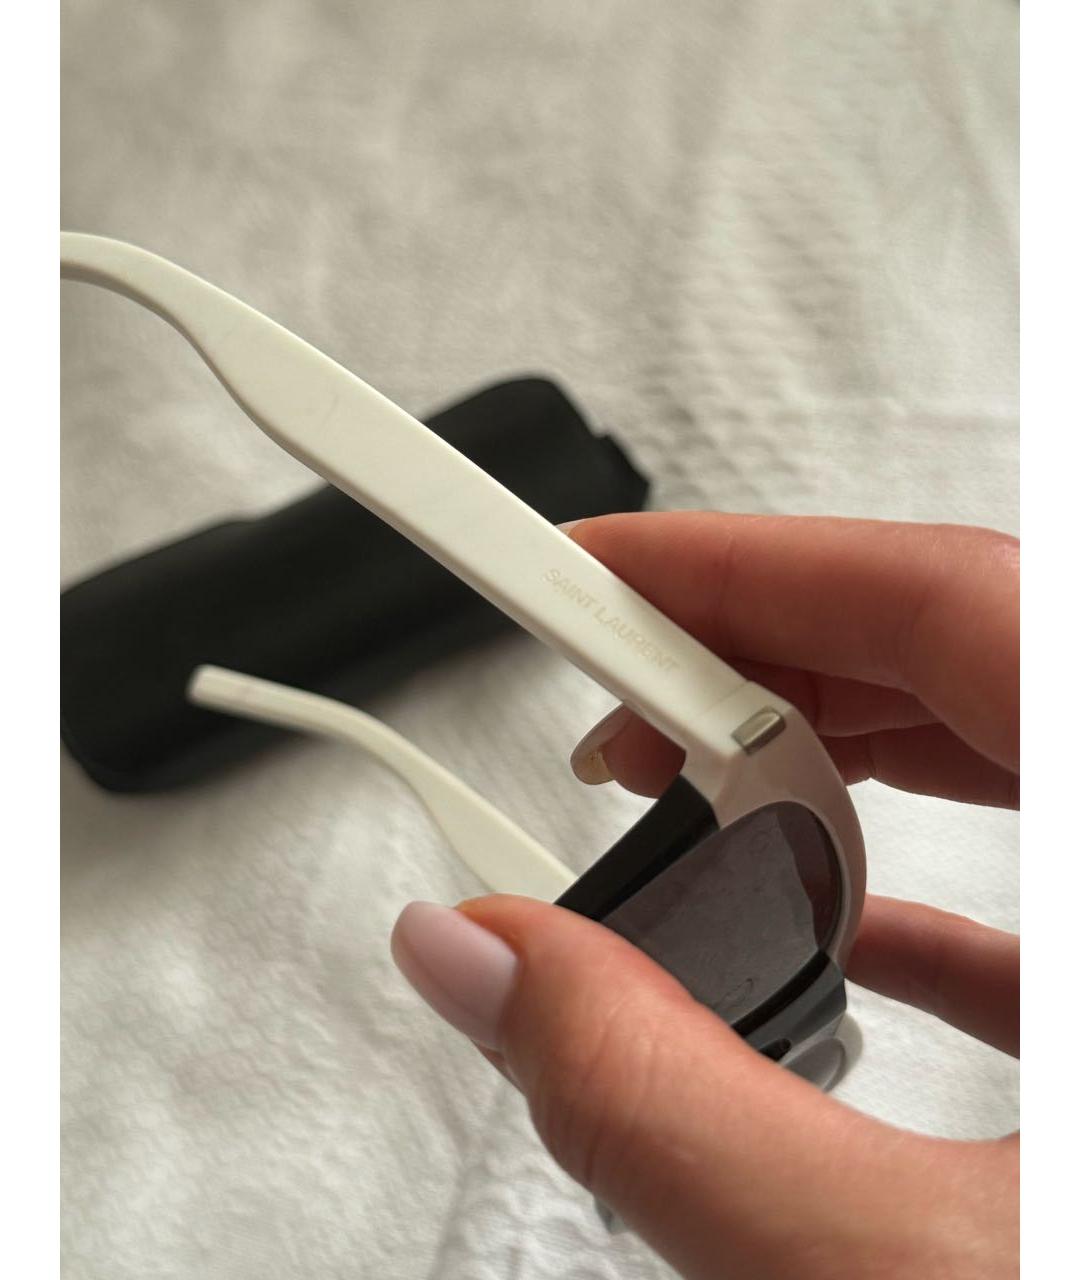 SAINT LAURENT Черные пластиковые солнцезащитные очки, фото 4